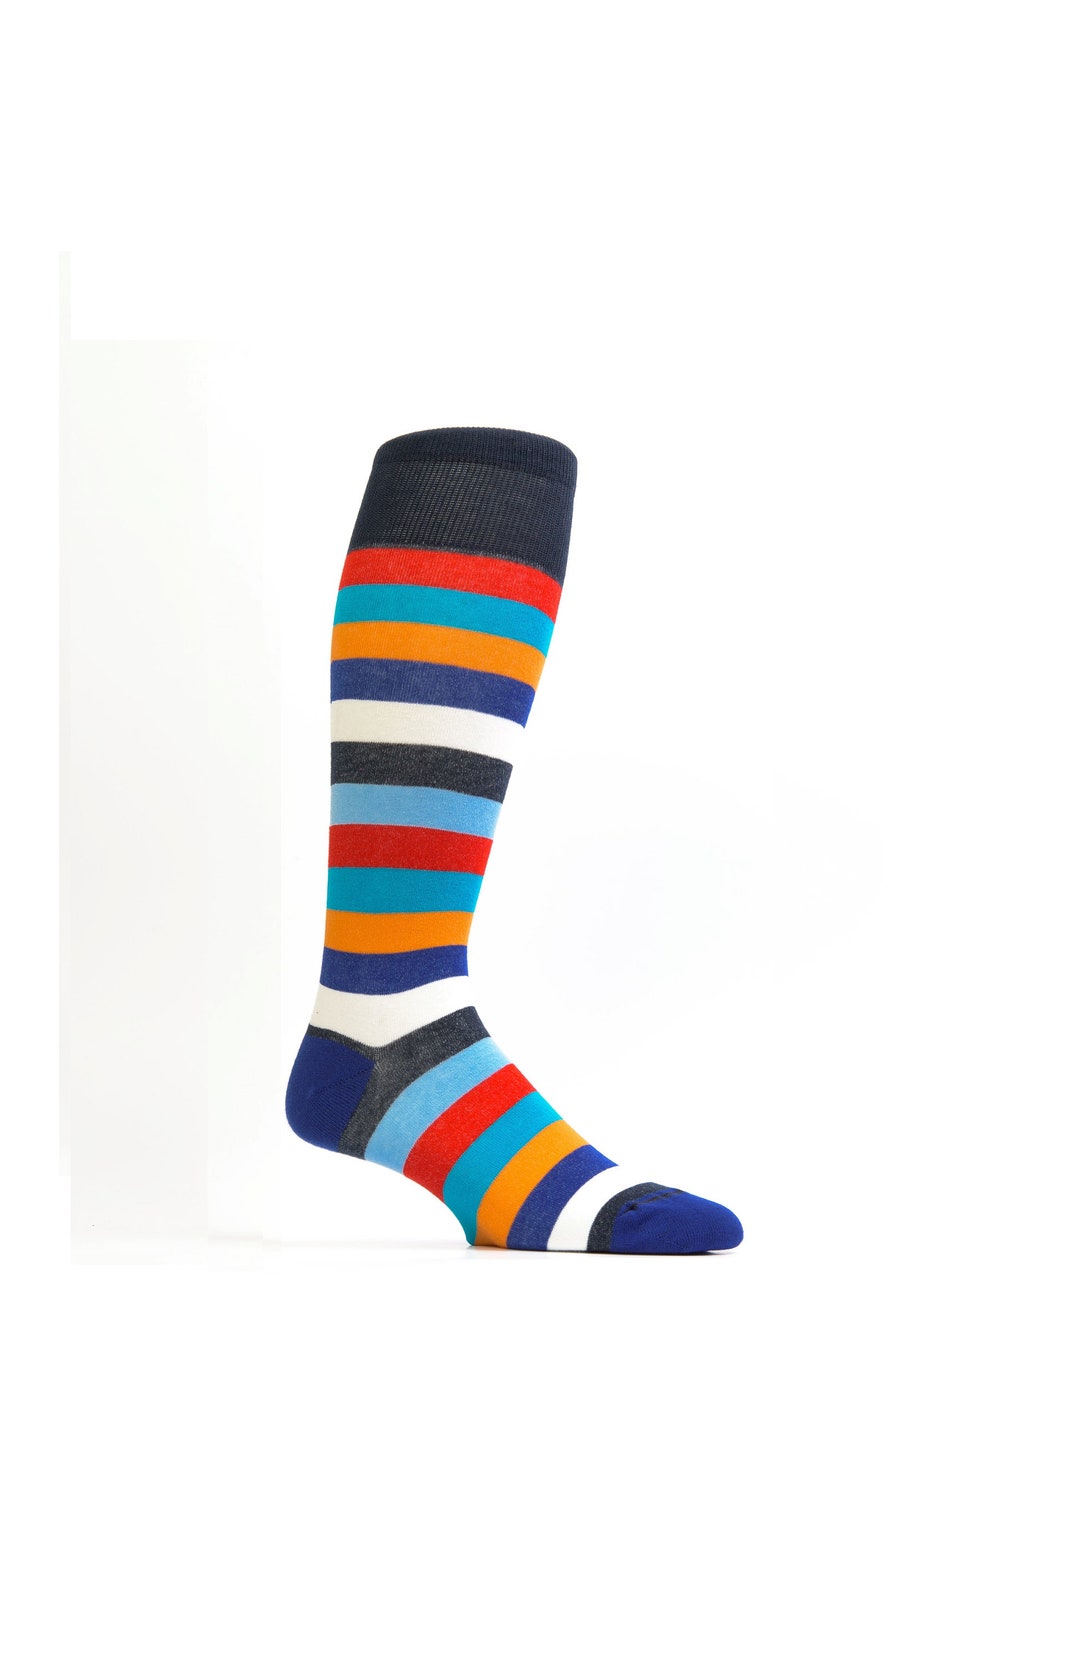 Multicolor Knee High Socks for Women Thigh High Socks for Her - Etsy